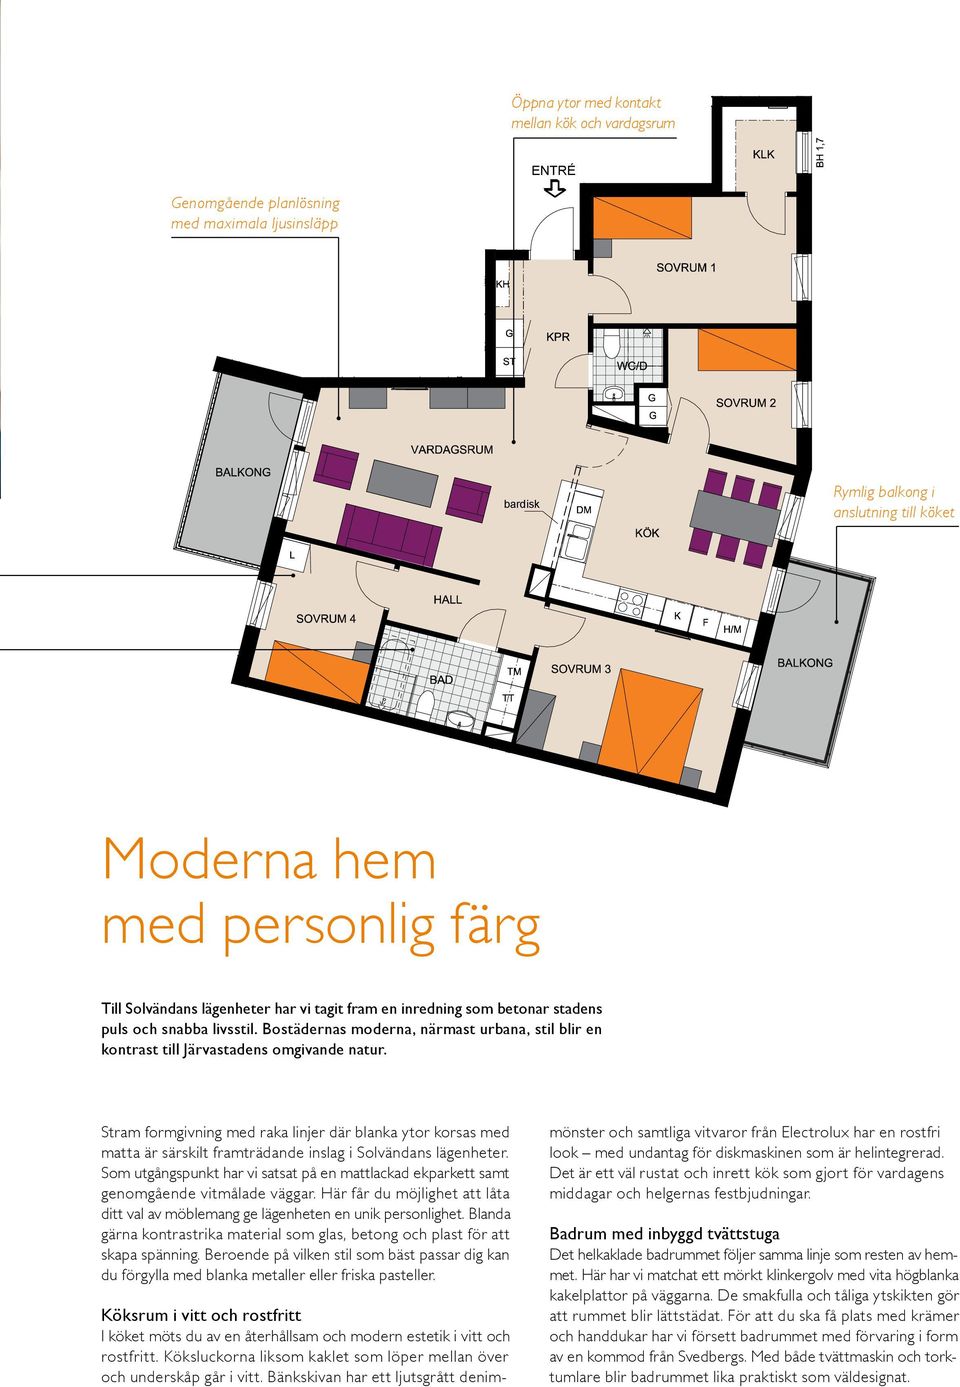 Bostädernas moderna, närmast urbana, stil blir en kontrast till Järvastadens omgivande natur.